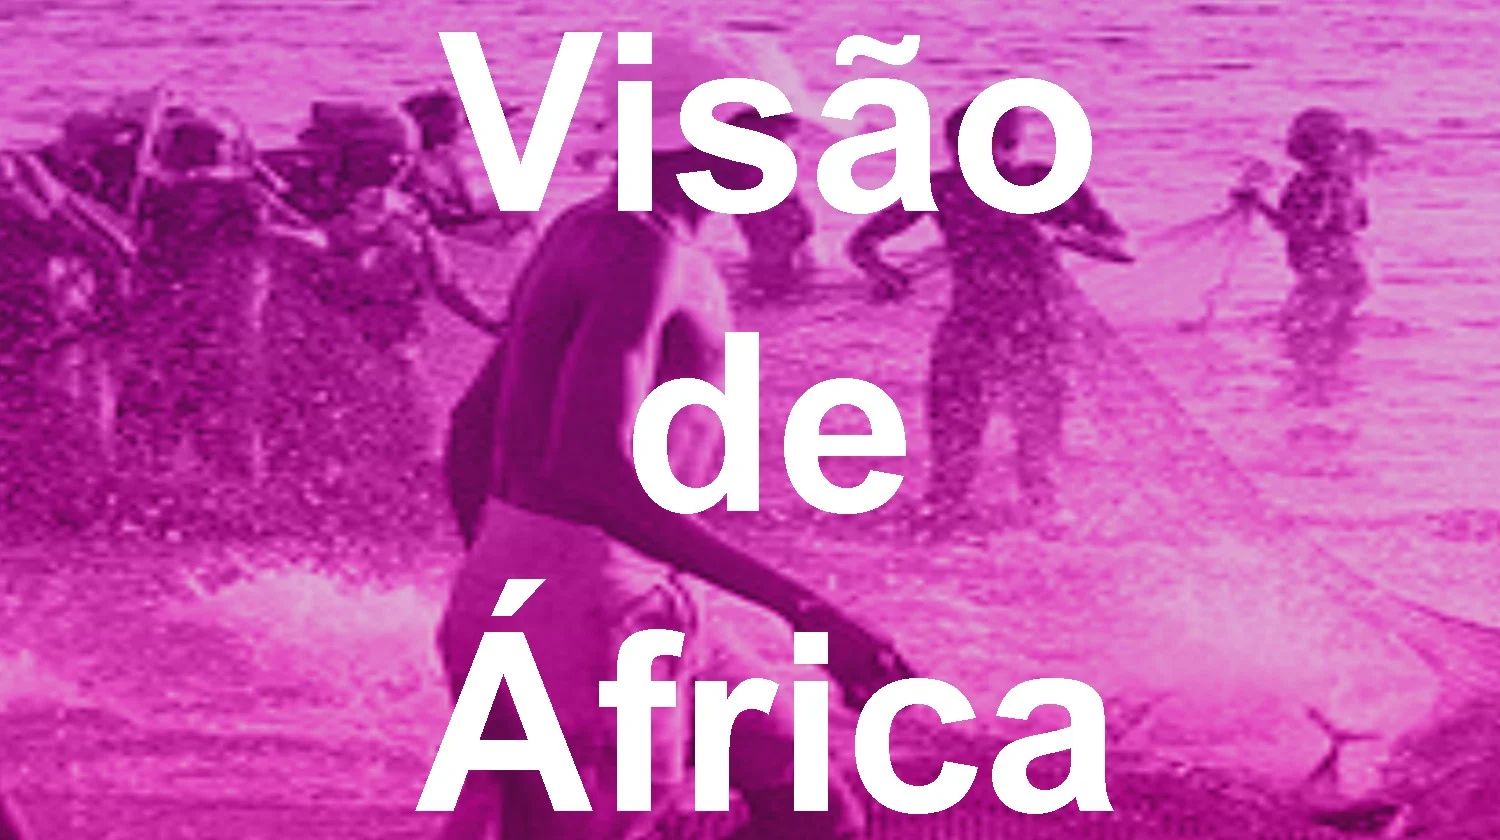 Visão de Africa